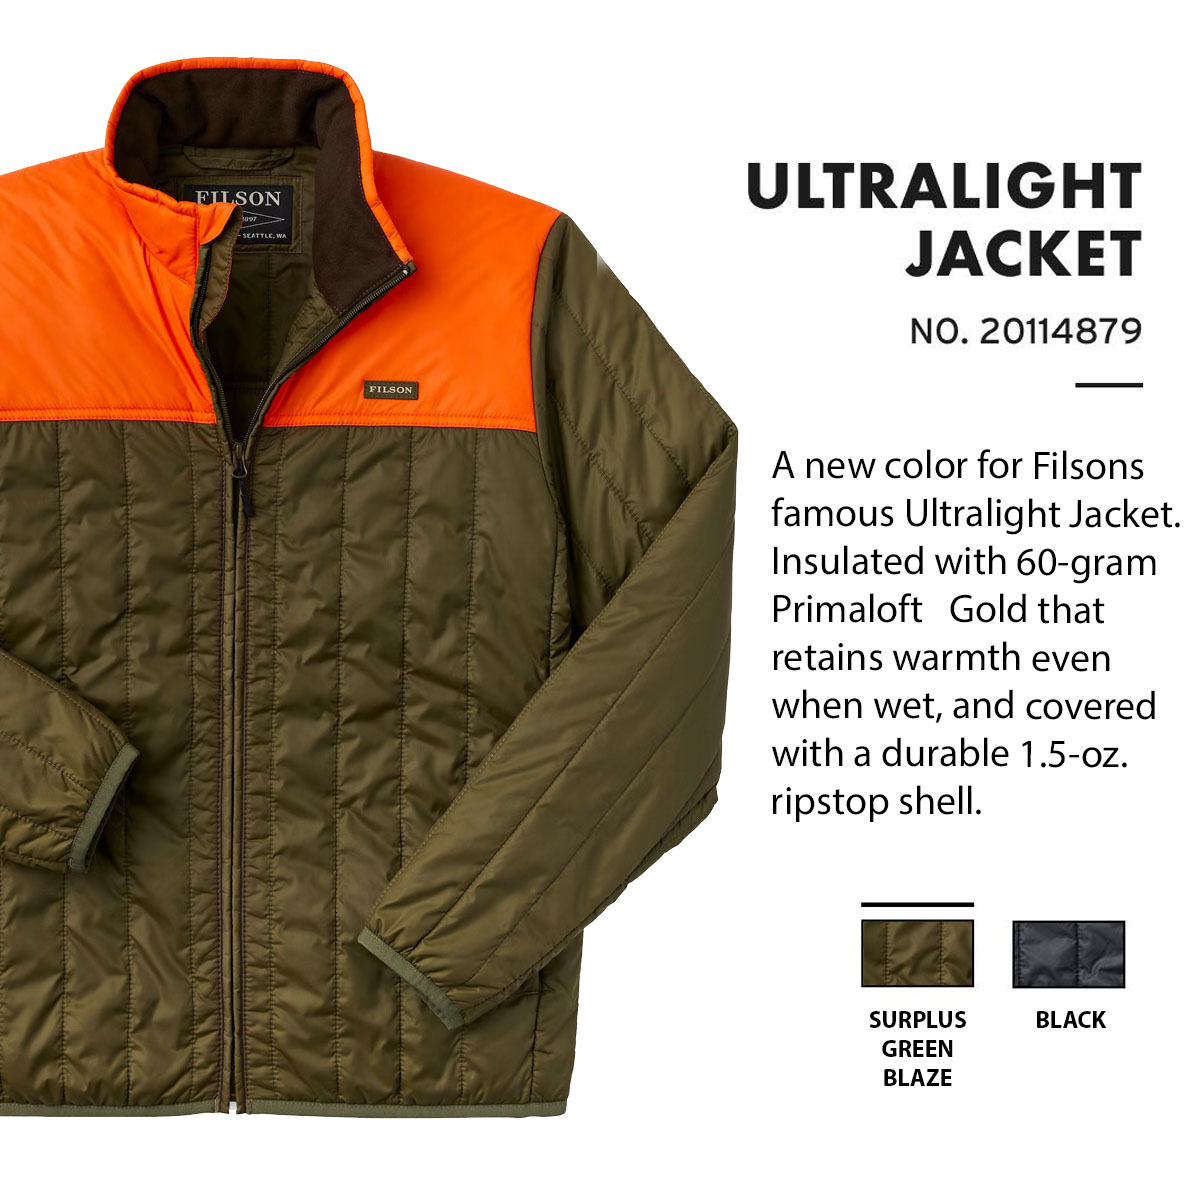 Filson Ultra Light Jacket Surplus Green Blaze, lichtgewicht jas met uitzonderlijke warmte-gewichtsverhouding